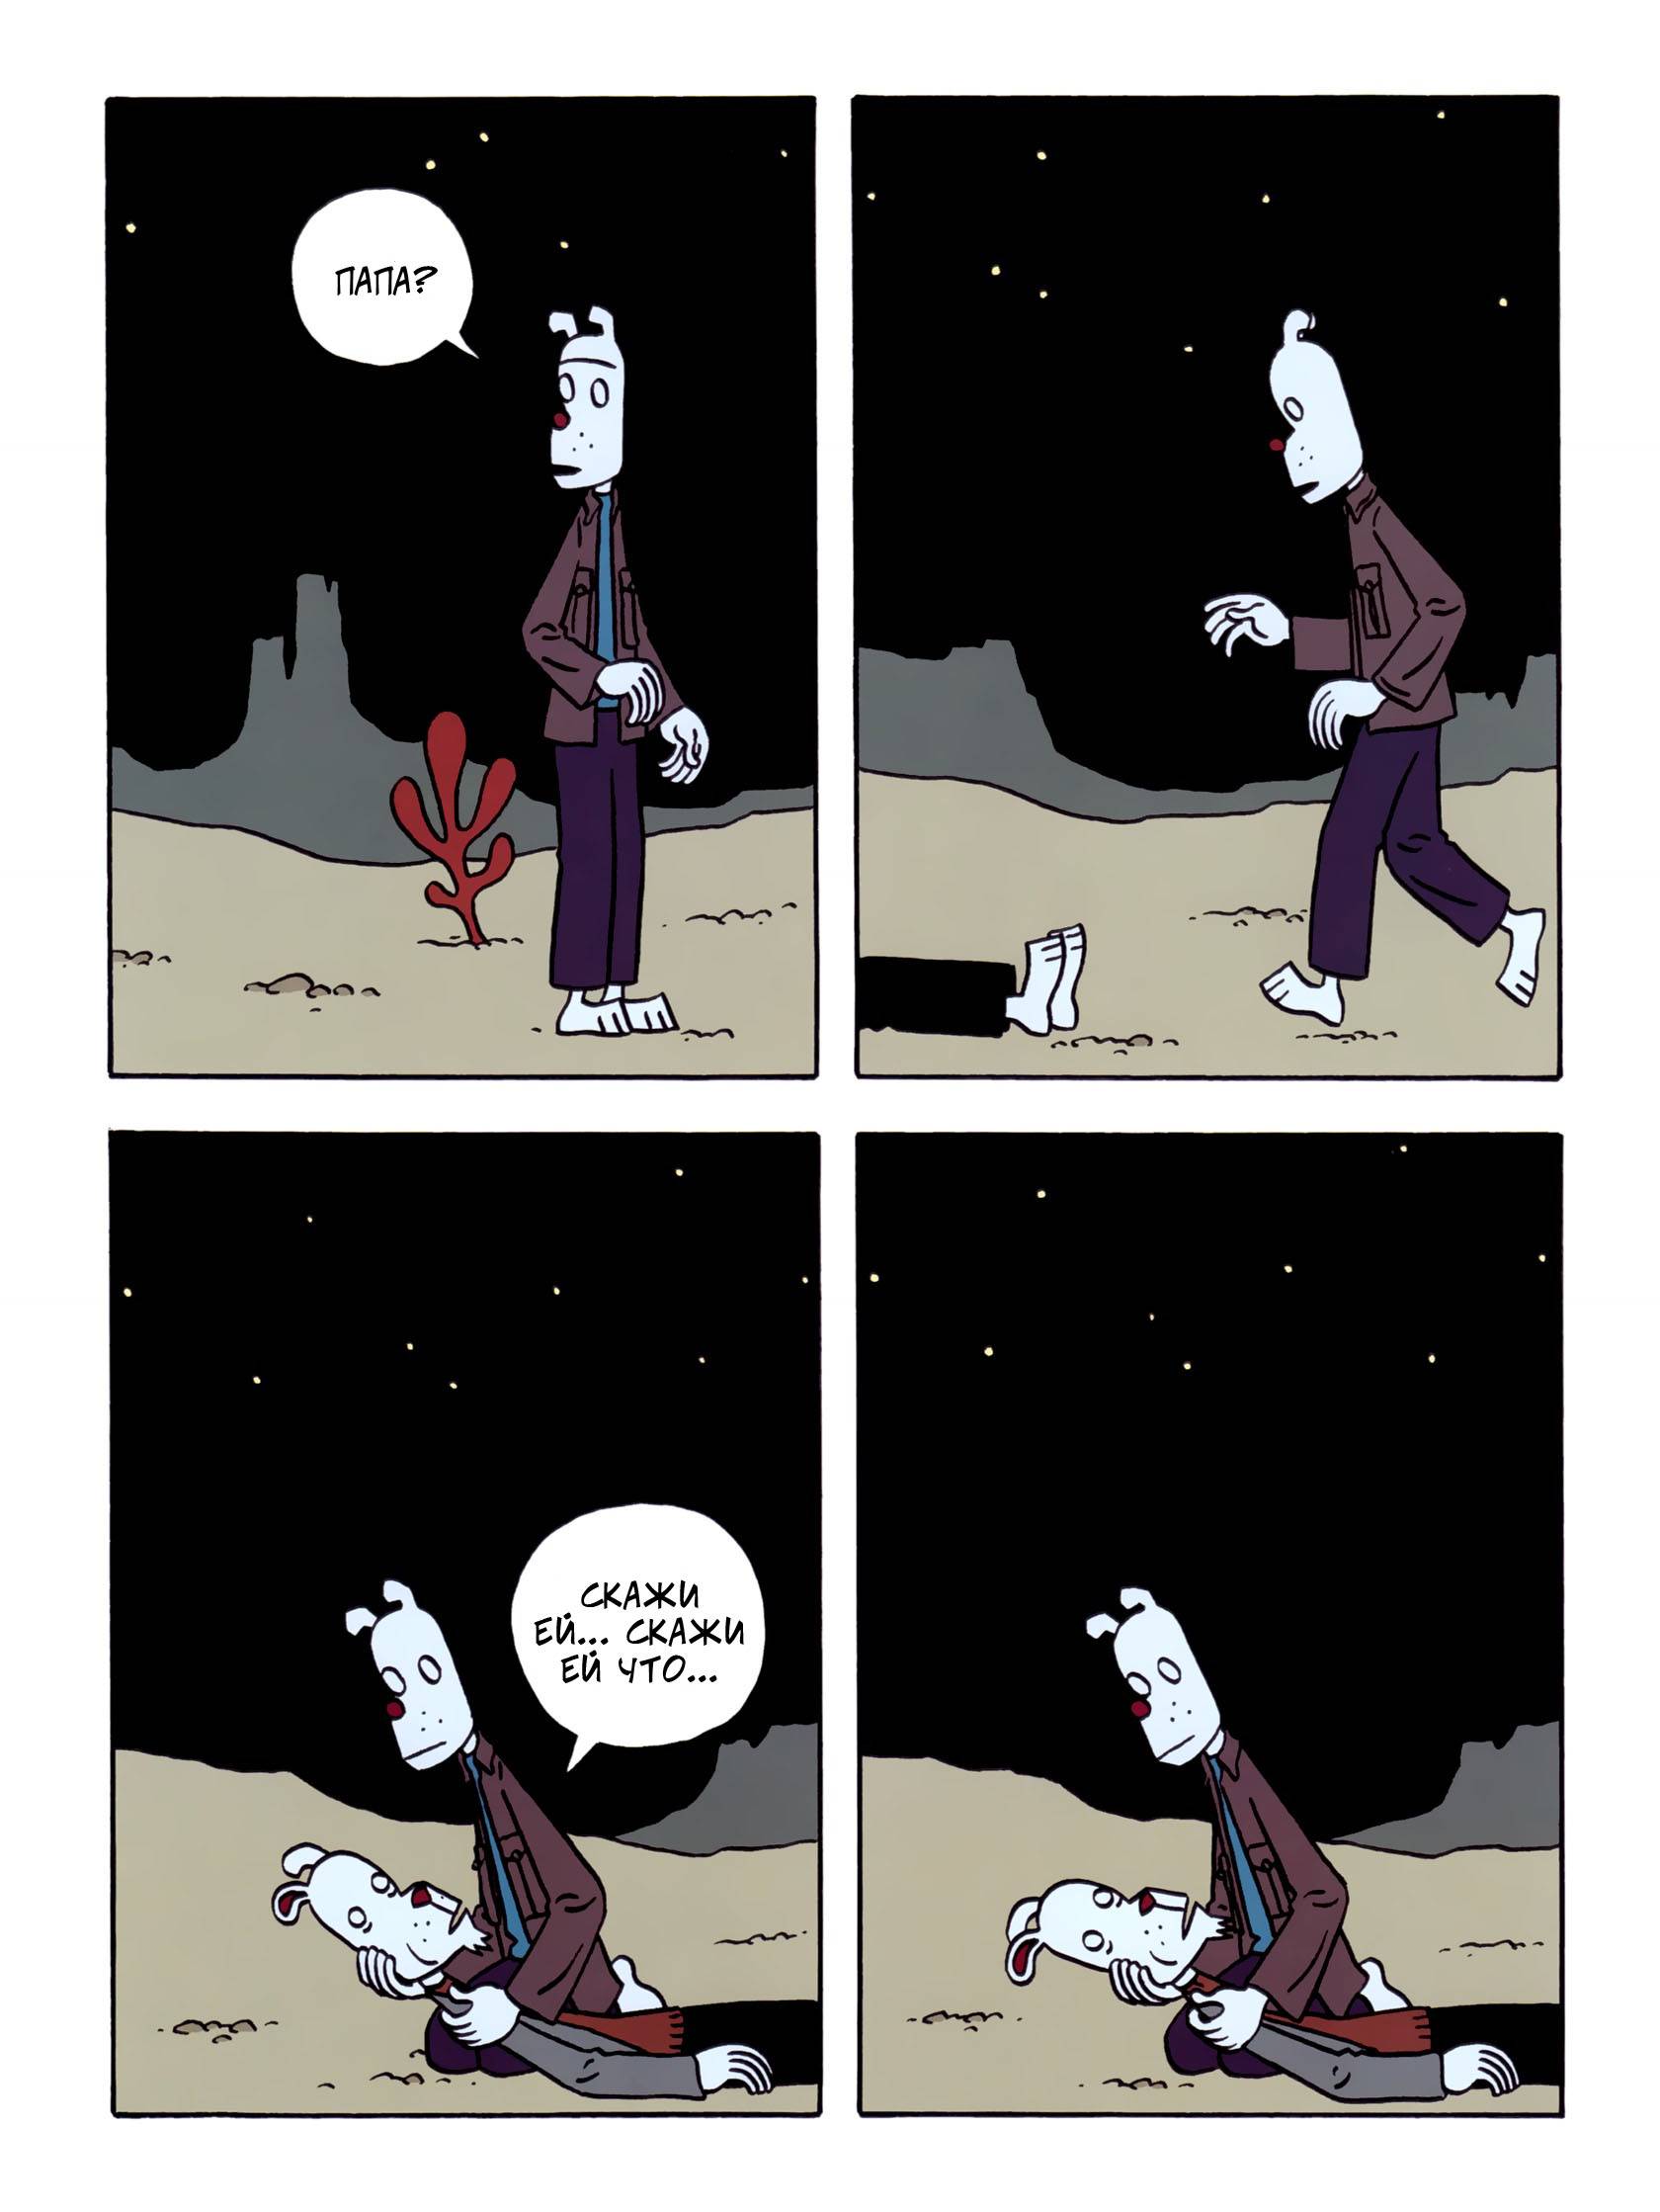 Читать комикс на луне